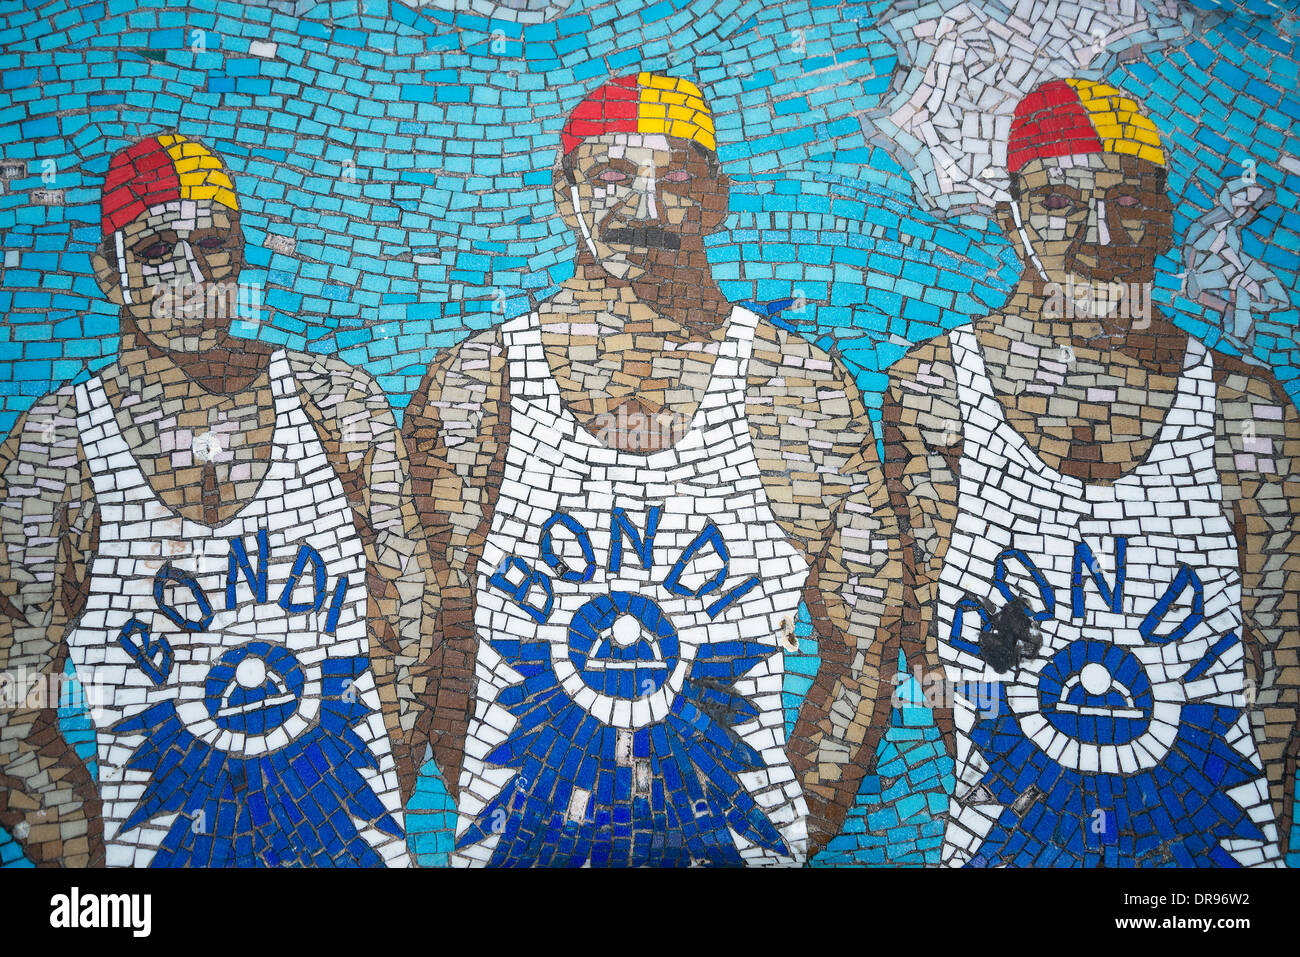 Rettungsschwimmer Mosaik Bank Details in Bondi beach, Sydney Australien Stockfoto